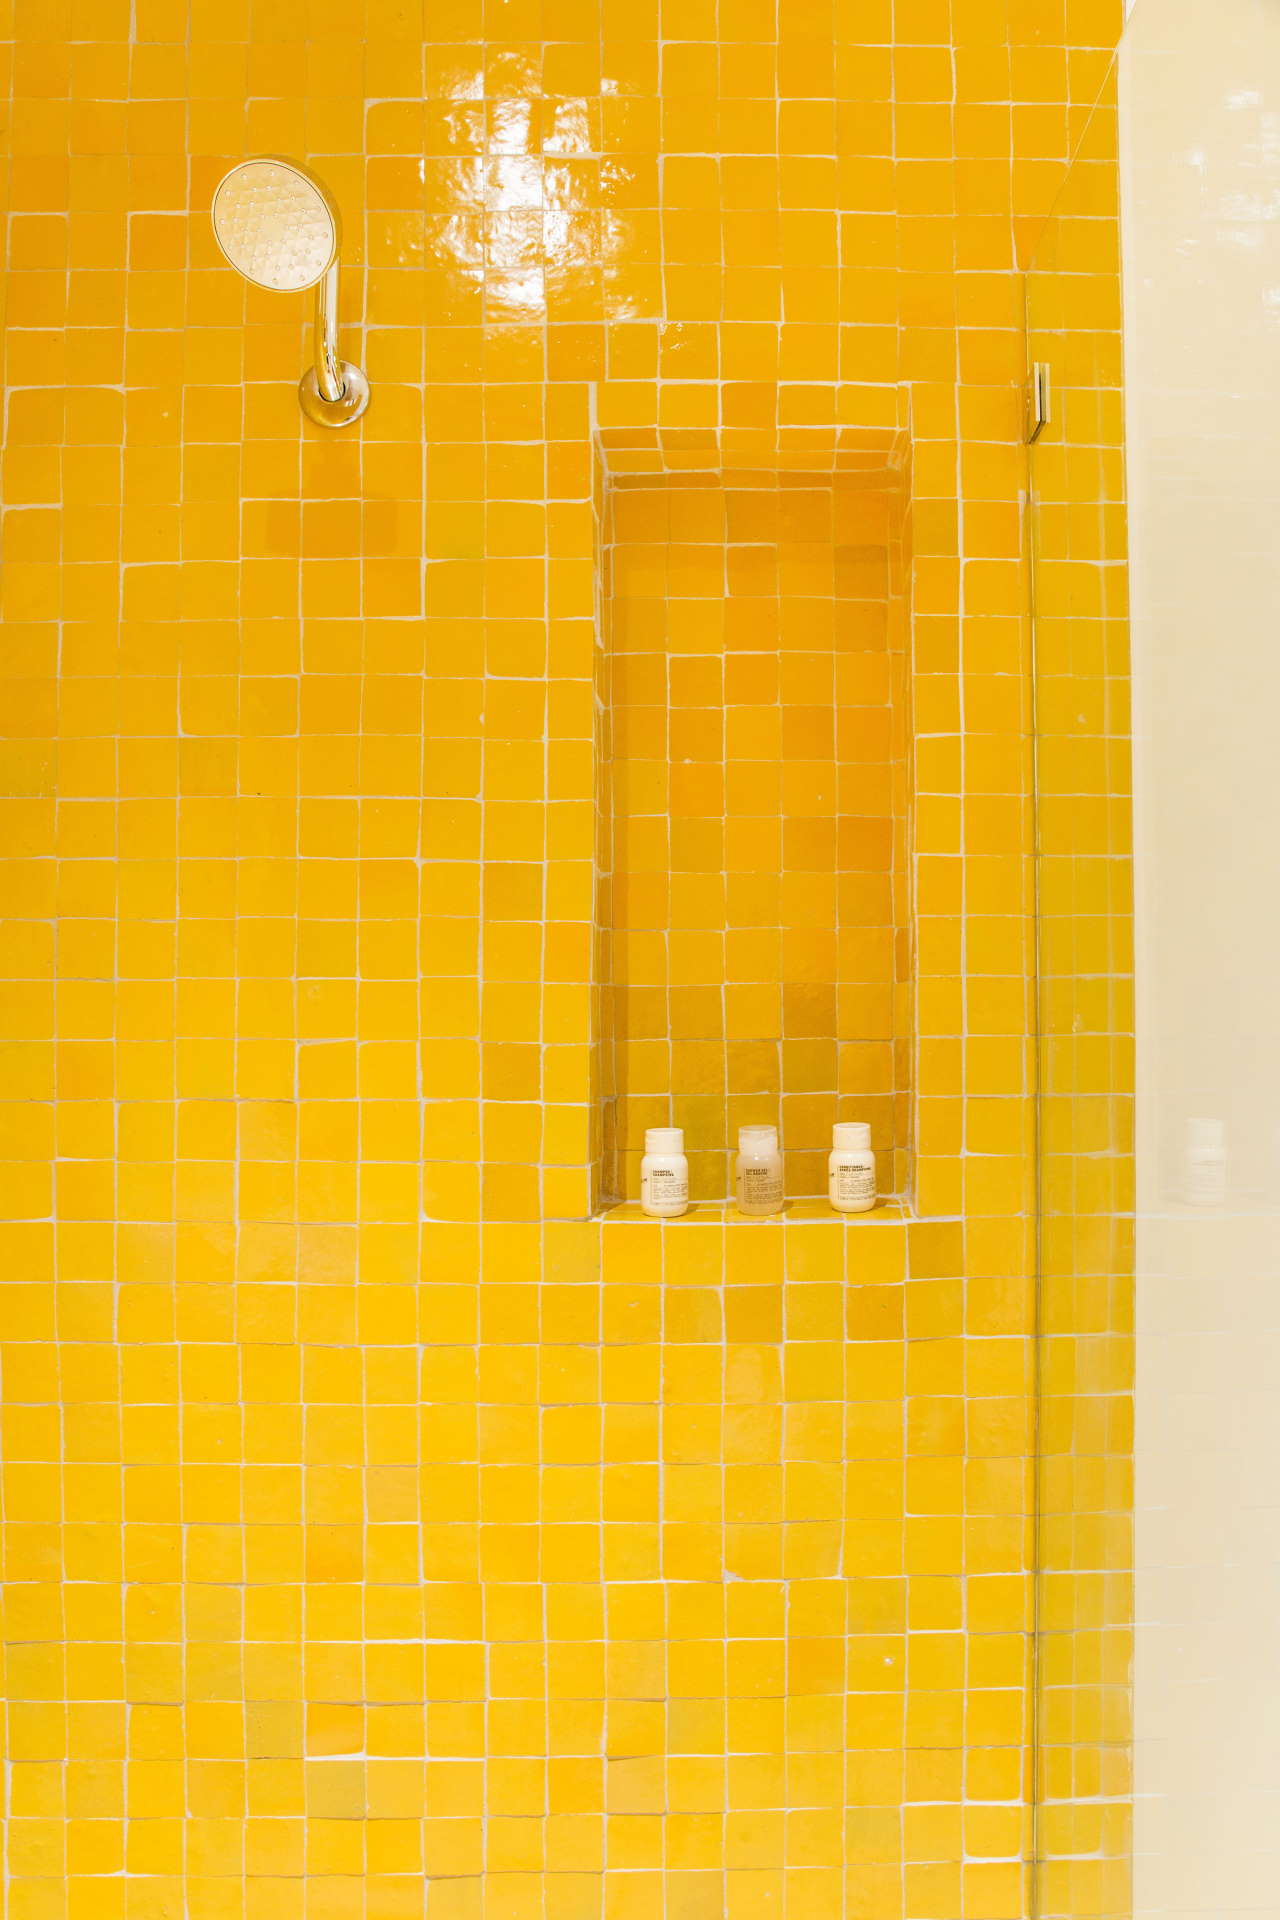 Yellow room. Photo by Aaron Haxton.